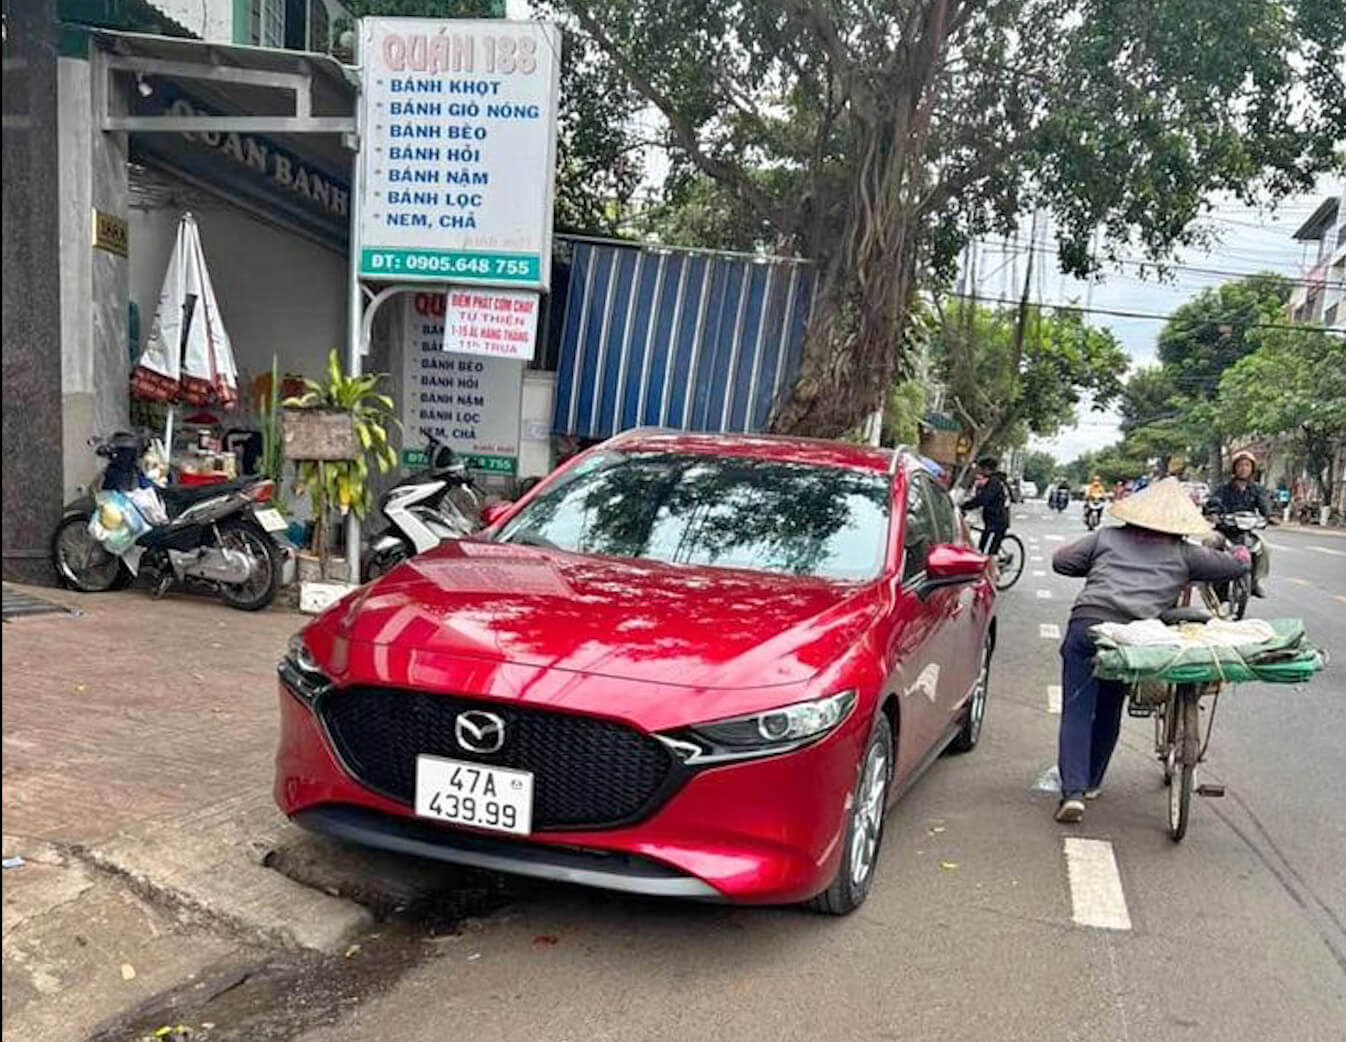 SigoVN - Cho thuê xe tự lái Buôn Ma Thuột - Mazda 3 Hatchback